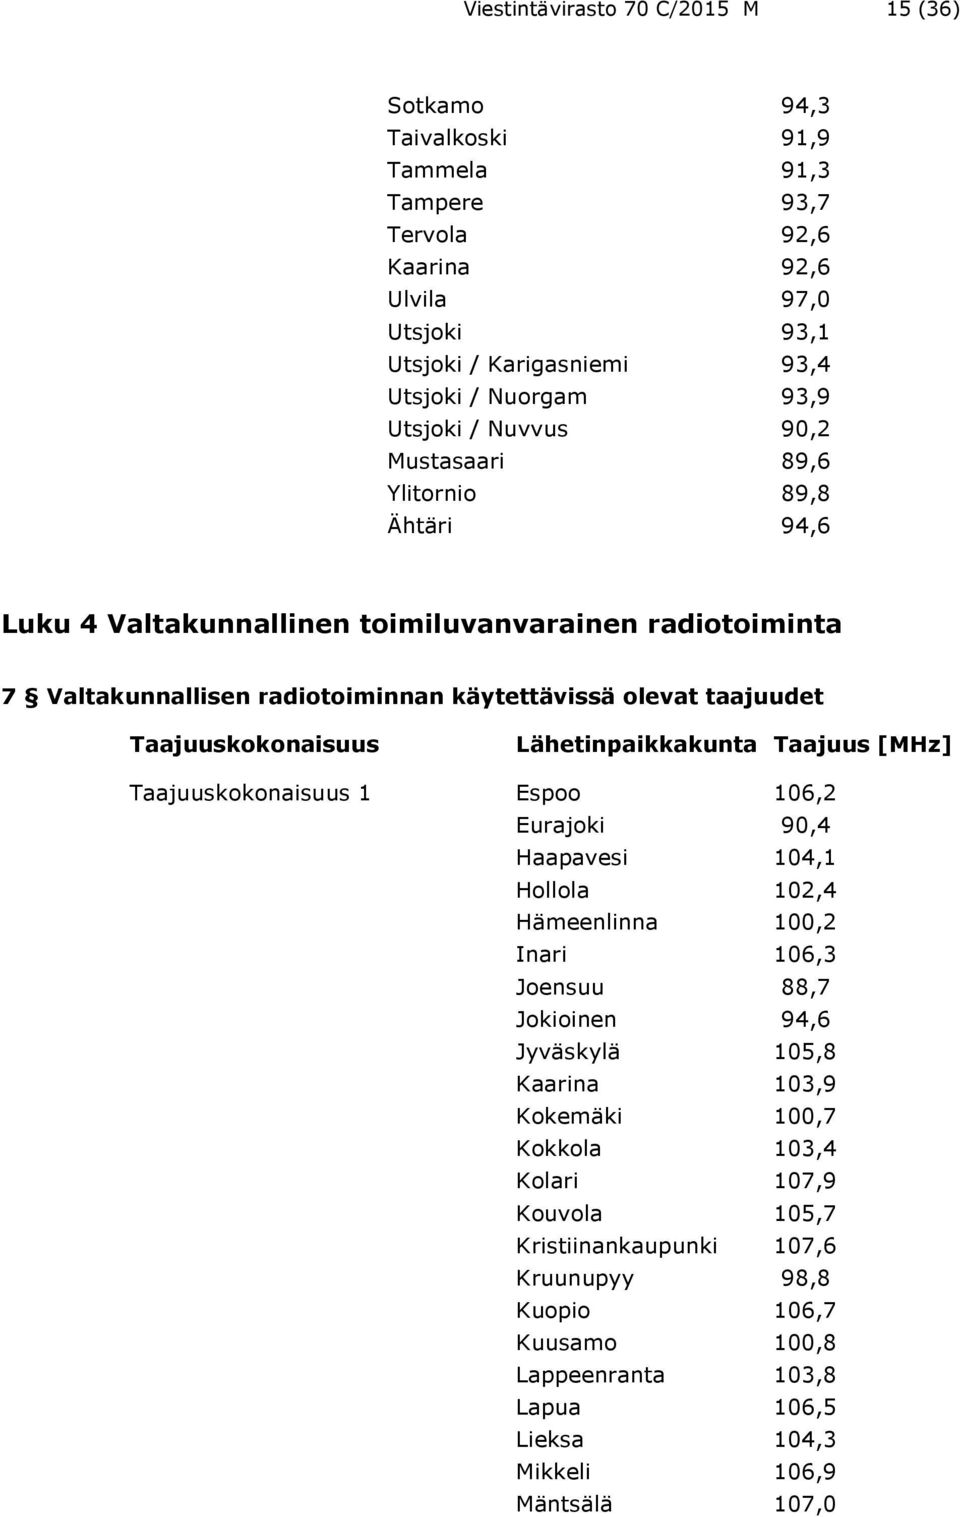 Taajuuskokonaisuus Lähetinpaikkakunta Taajuus [MHz] Taajuuskokonaisuus 1 Espoo 106,2 Eurajoki 90,4 Haapavesi 104,1 Hollola 102,4 Hämeenlinna 100,2 Inari 106,3 Joensuu 88,7 Jokioinen 94,6 Jyväskylä